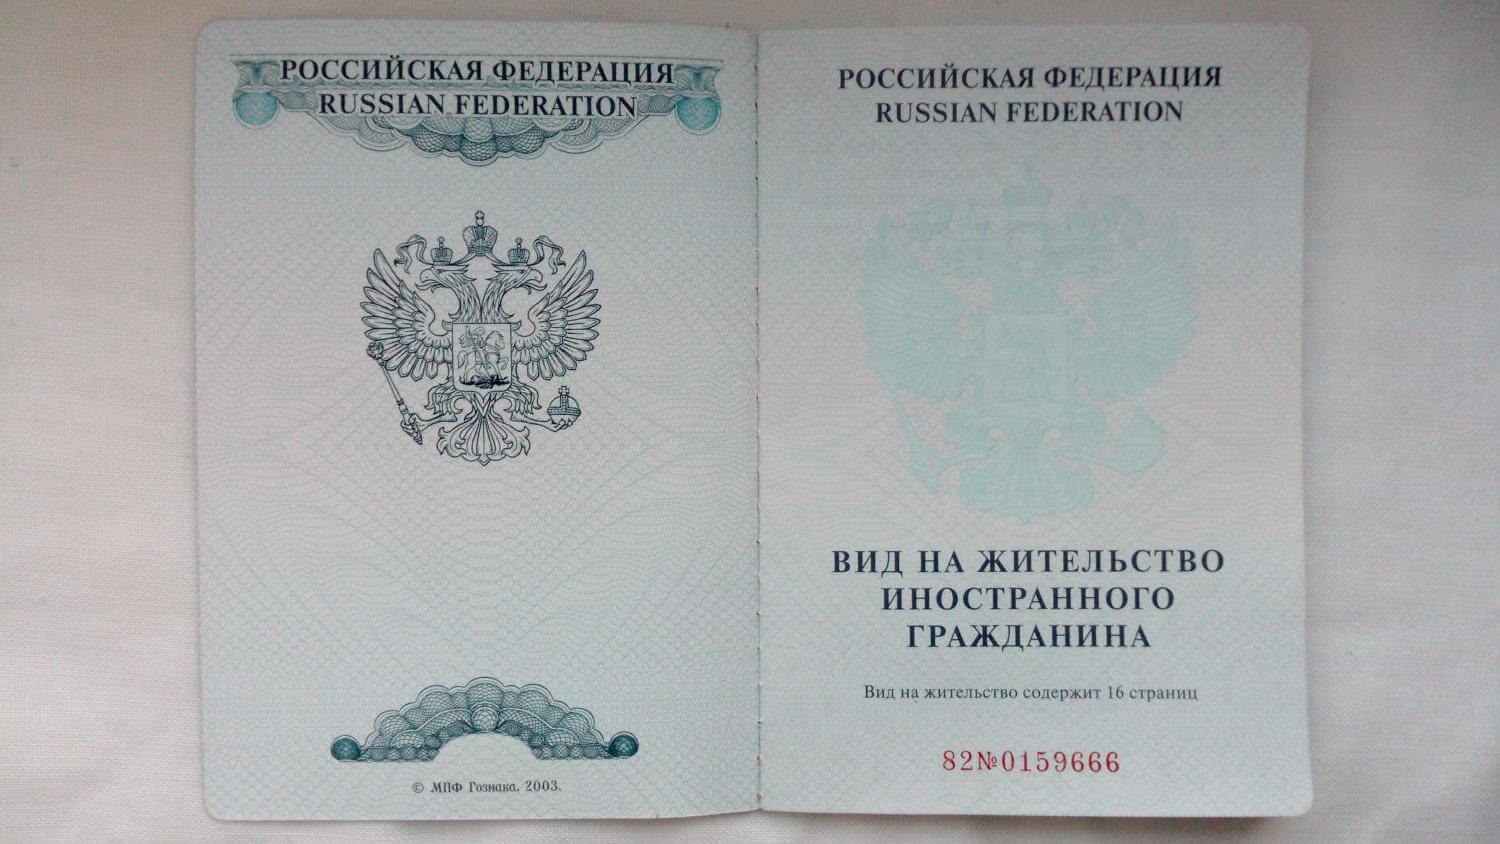 Паспорт вид на жительство иностранного гражданина в РФ